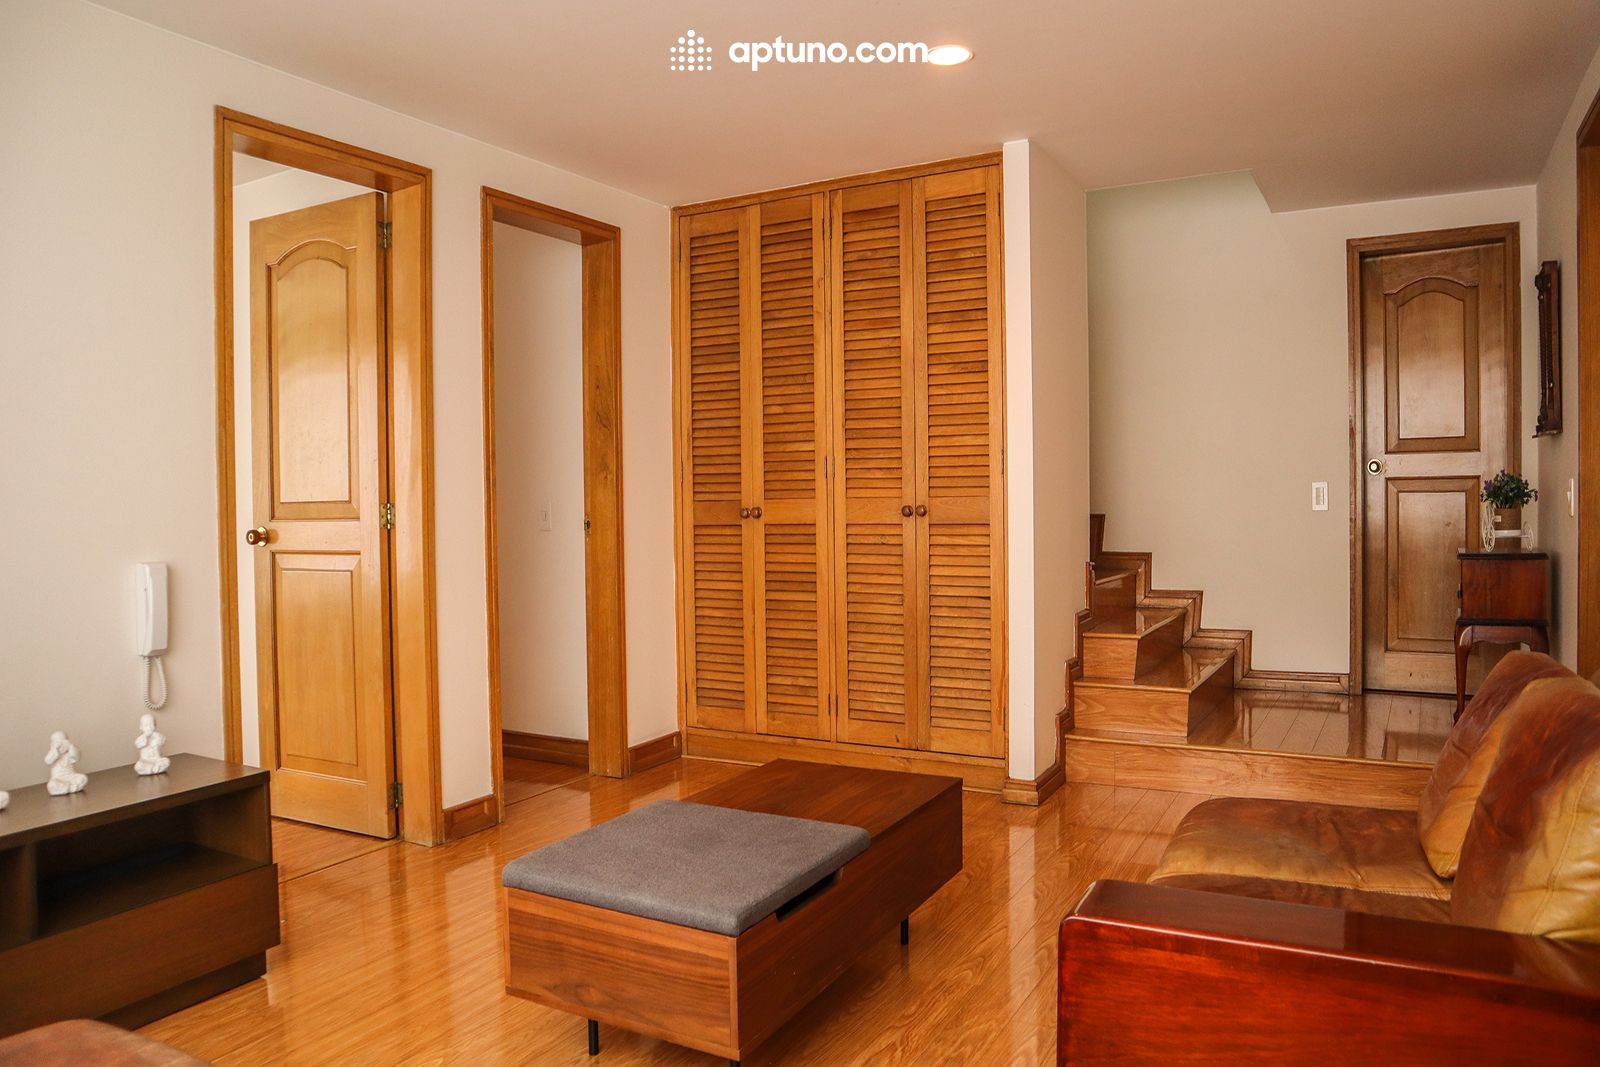 Apartamento en arriendo Chicó Norte III Sector 192 m² - $ 6.000.000